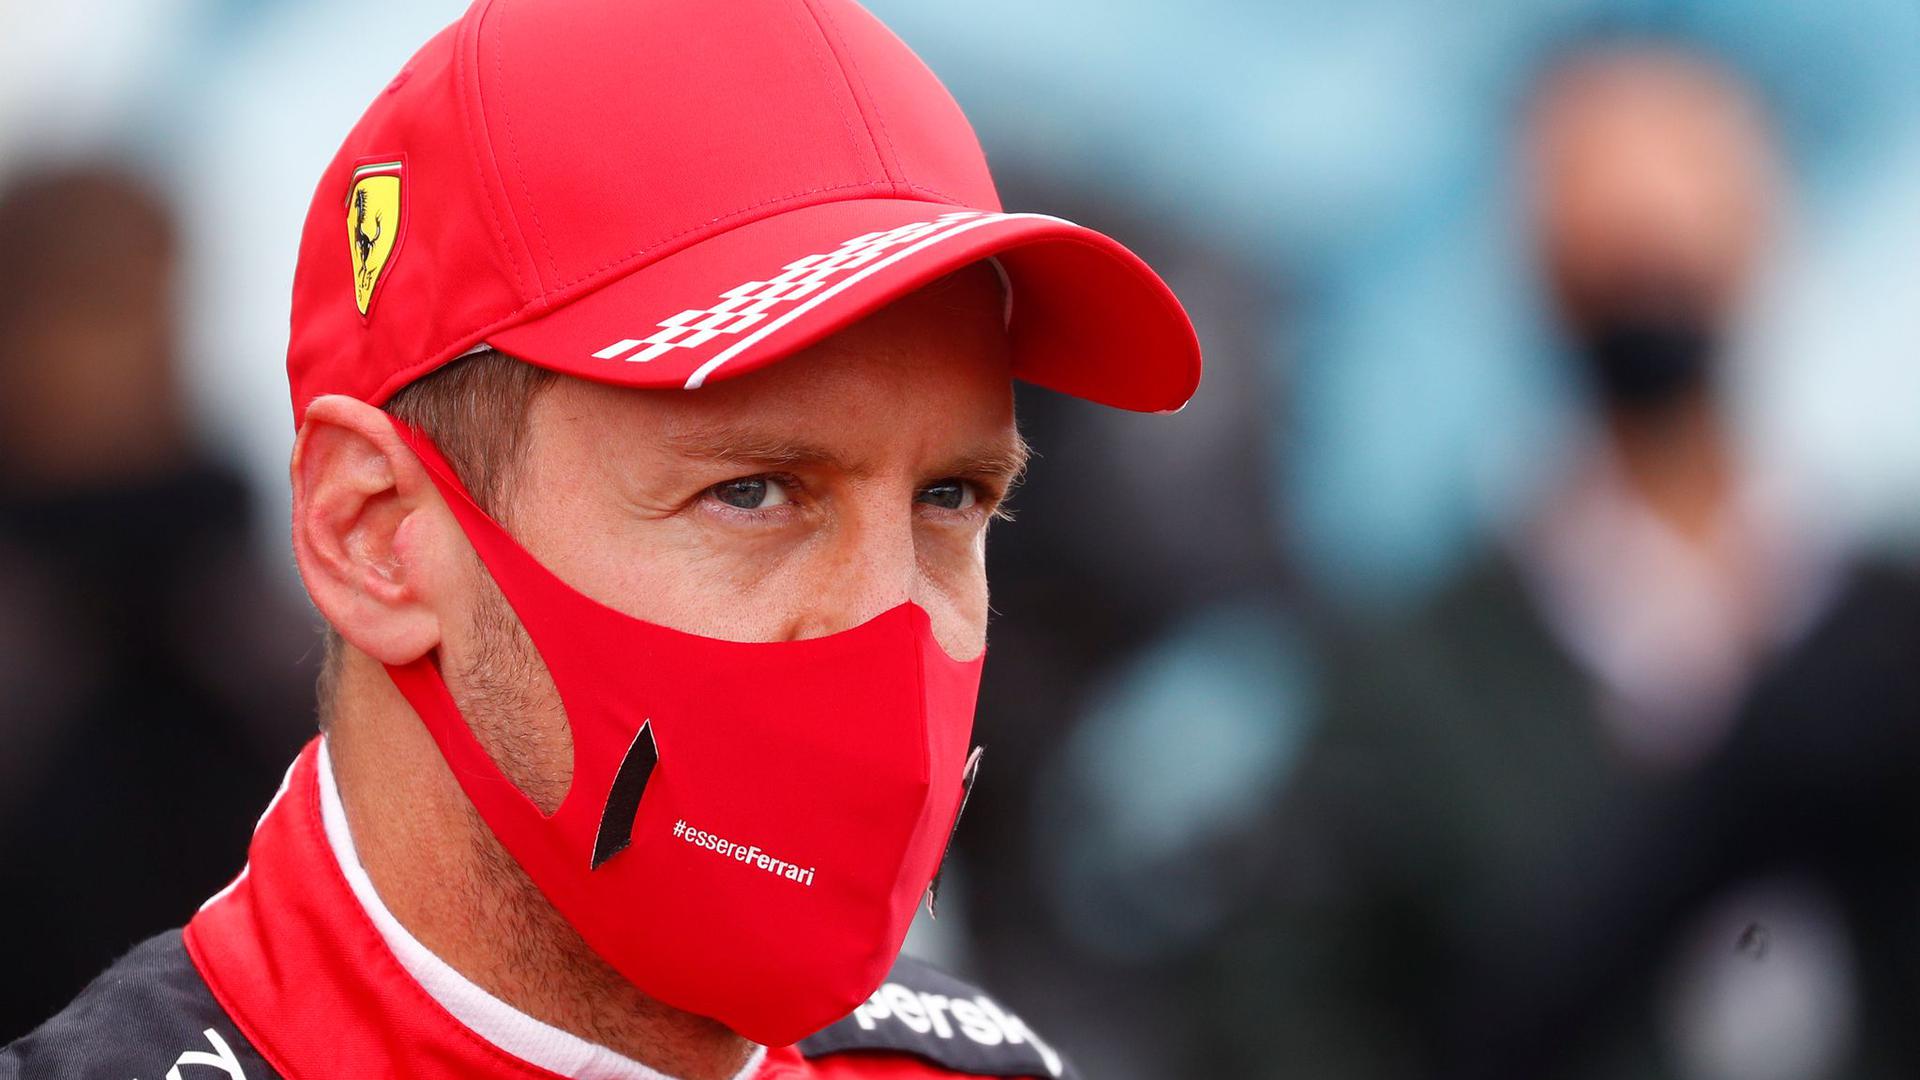 Rennfahrer Sebastian Vettel vom Team Ferrari darf sich auf einer neuen Strecke in Portugal ausprobieren.